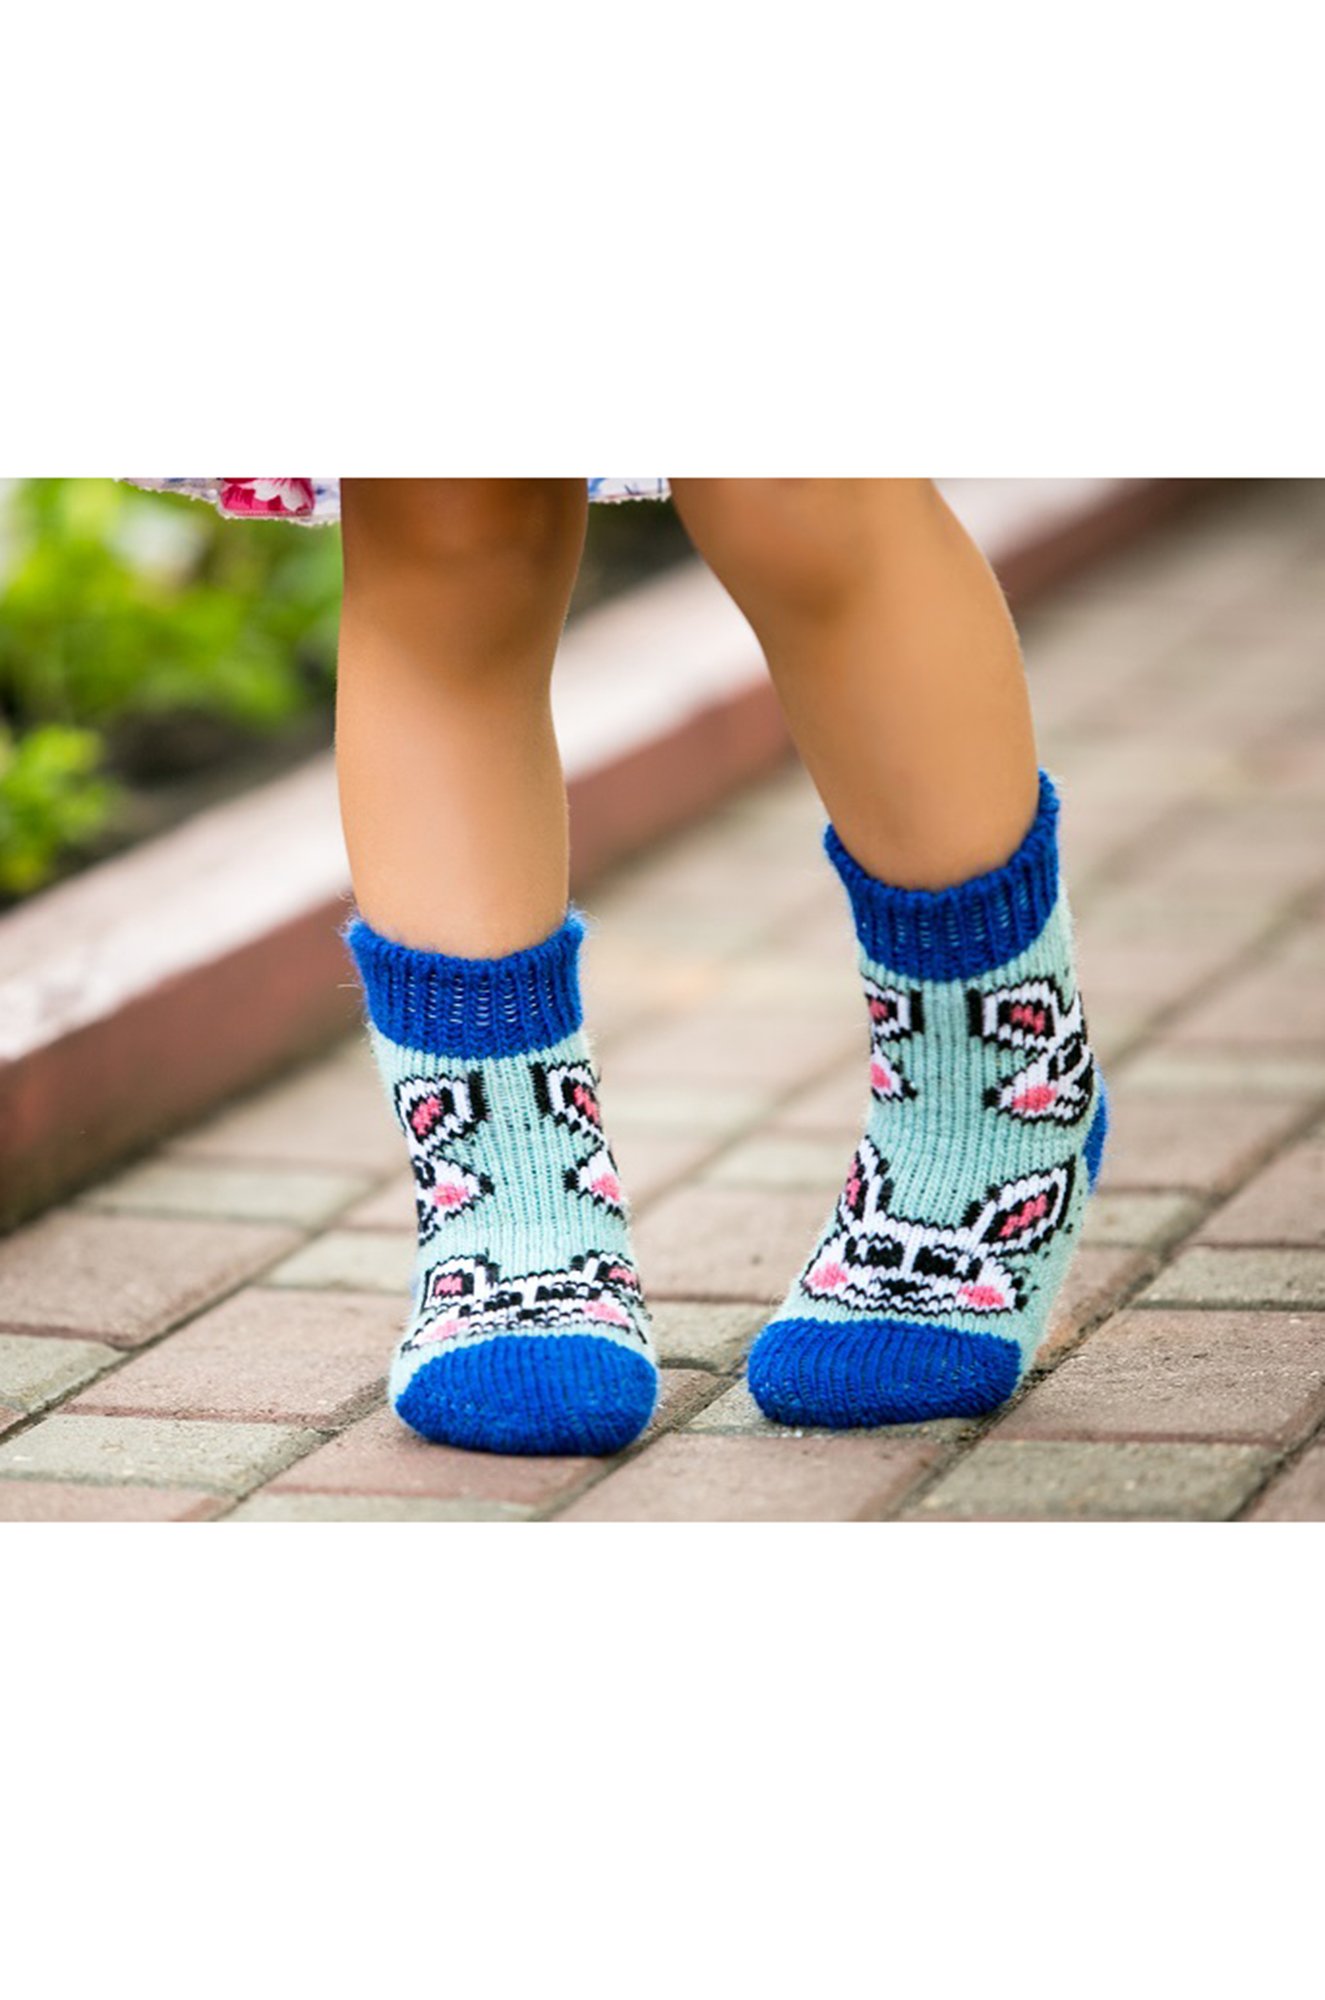 Носки для девочки шерстяные Бабушкины носки